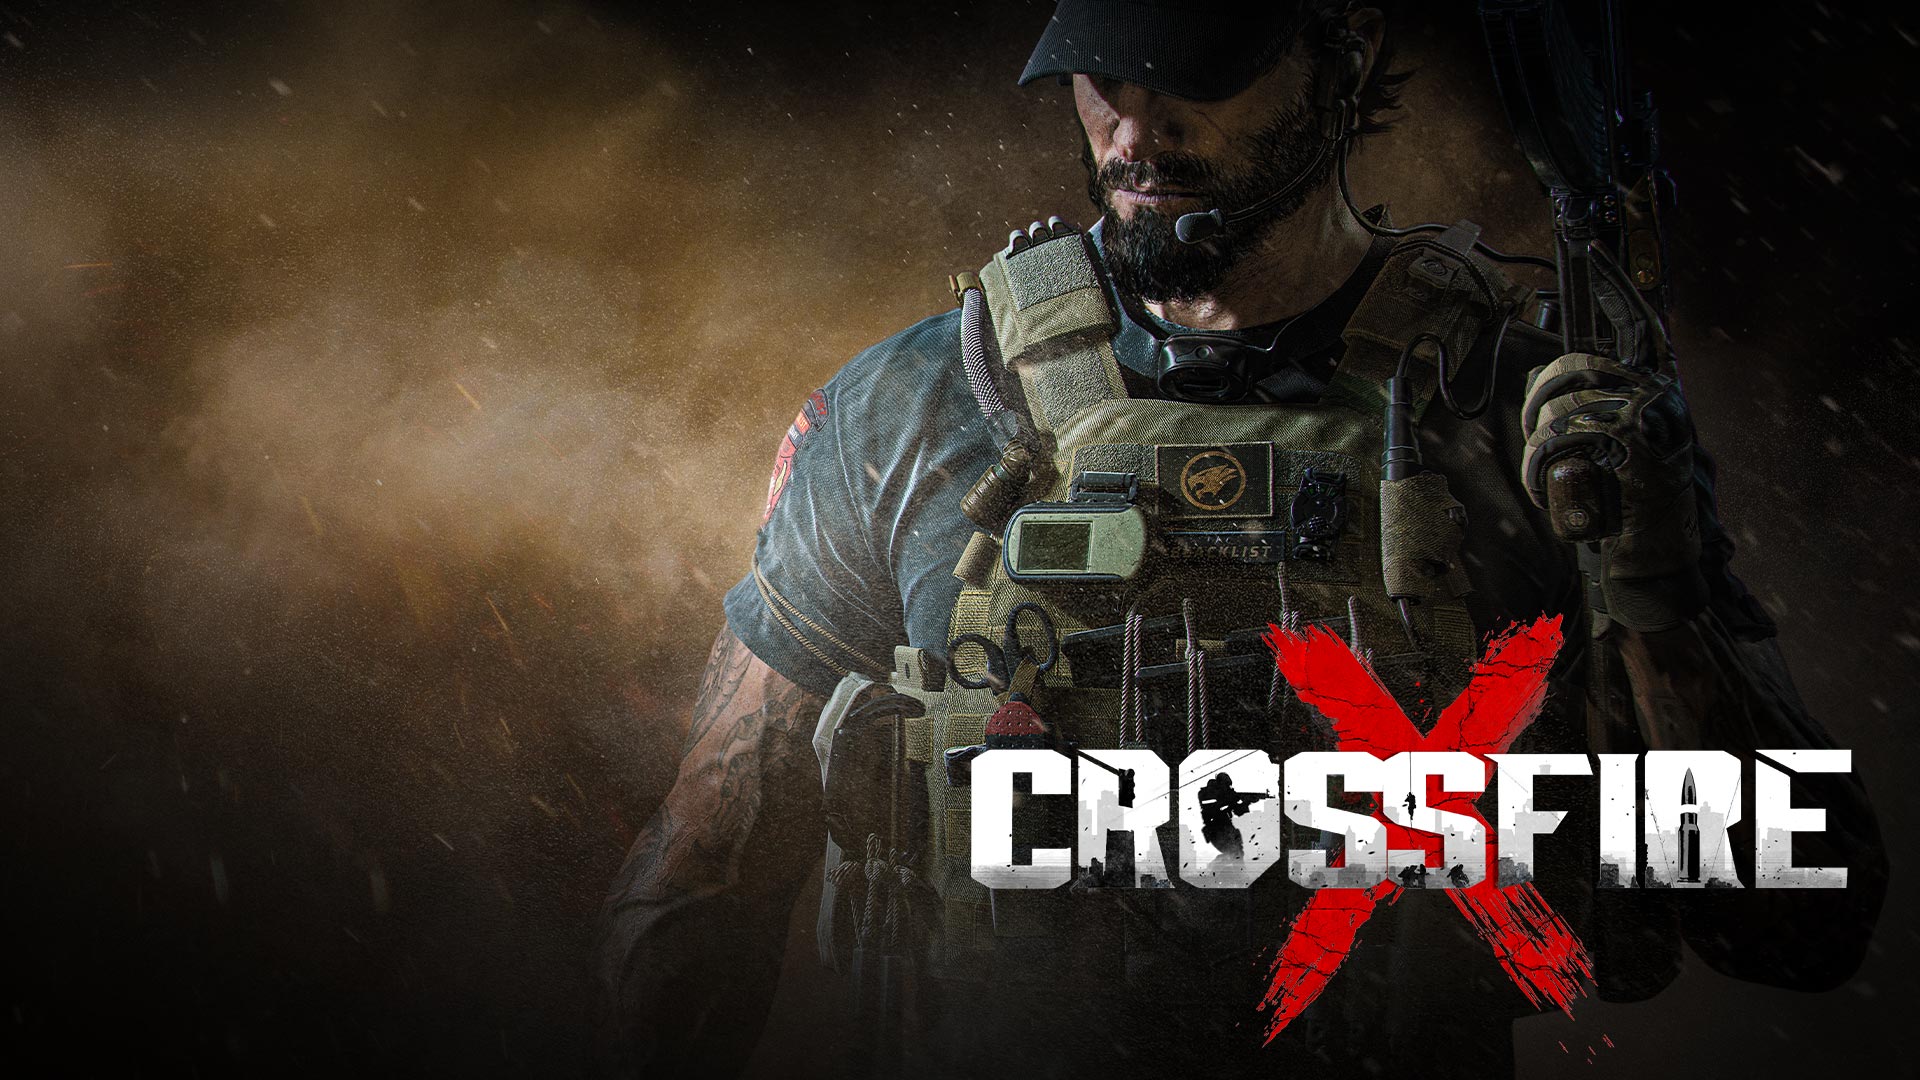 CrossfireX, ein schwer bewaffneter Mann steht inmitten von Rauch und Asche